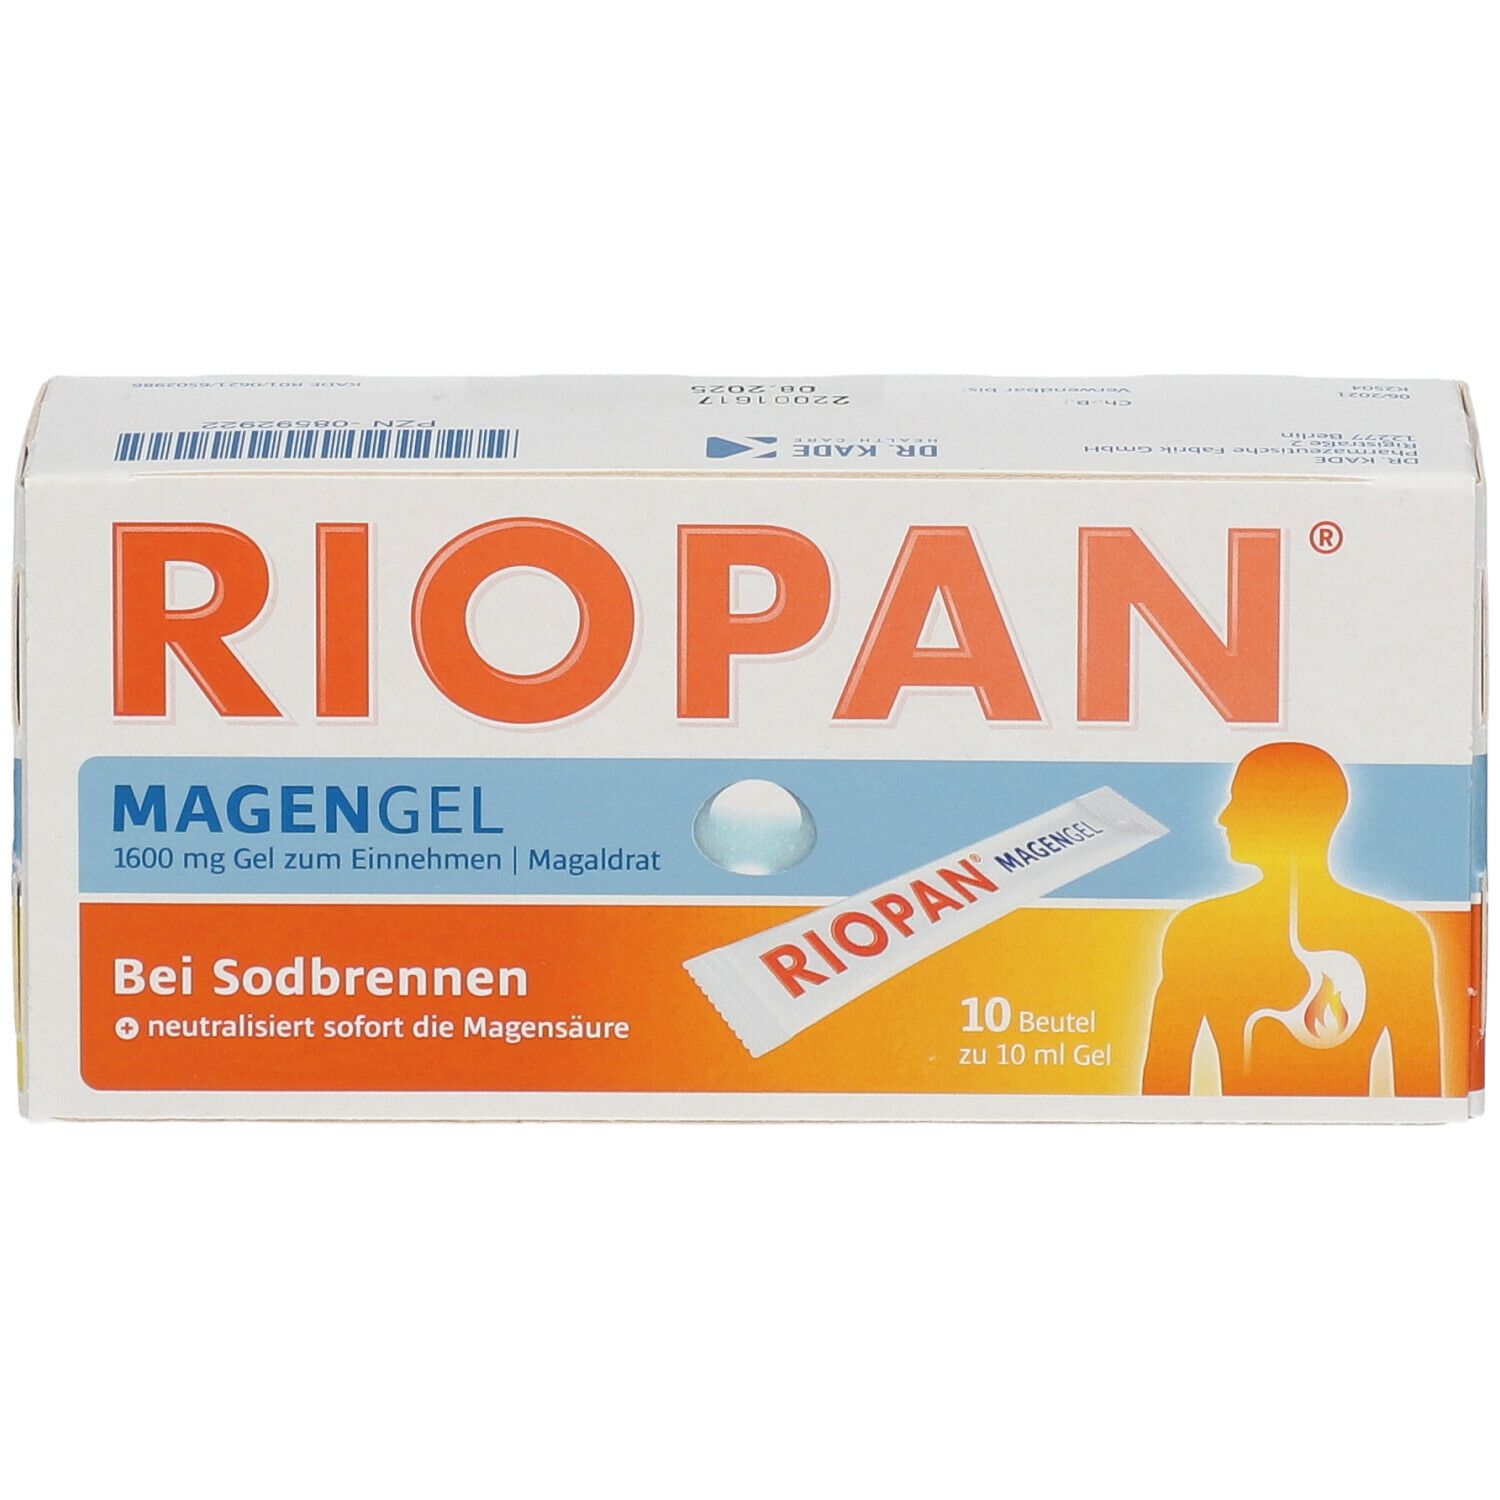 RIOPAN® MAGEN GEL